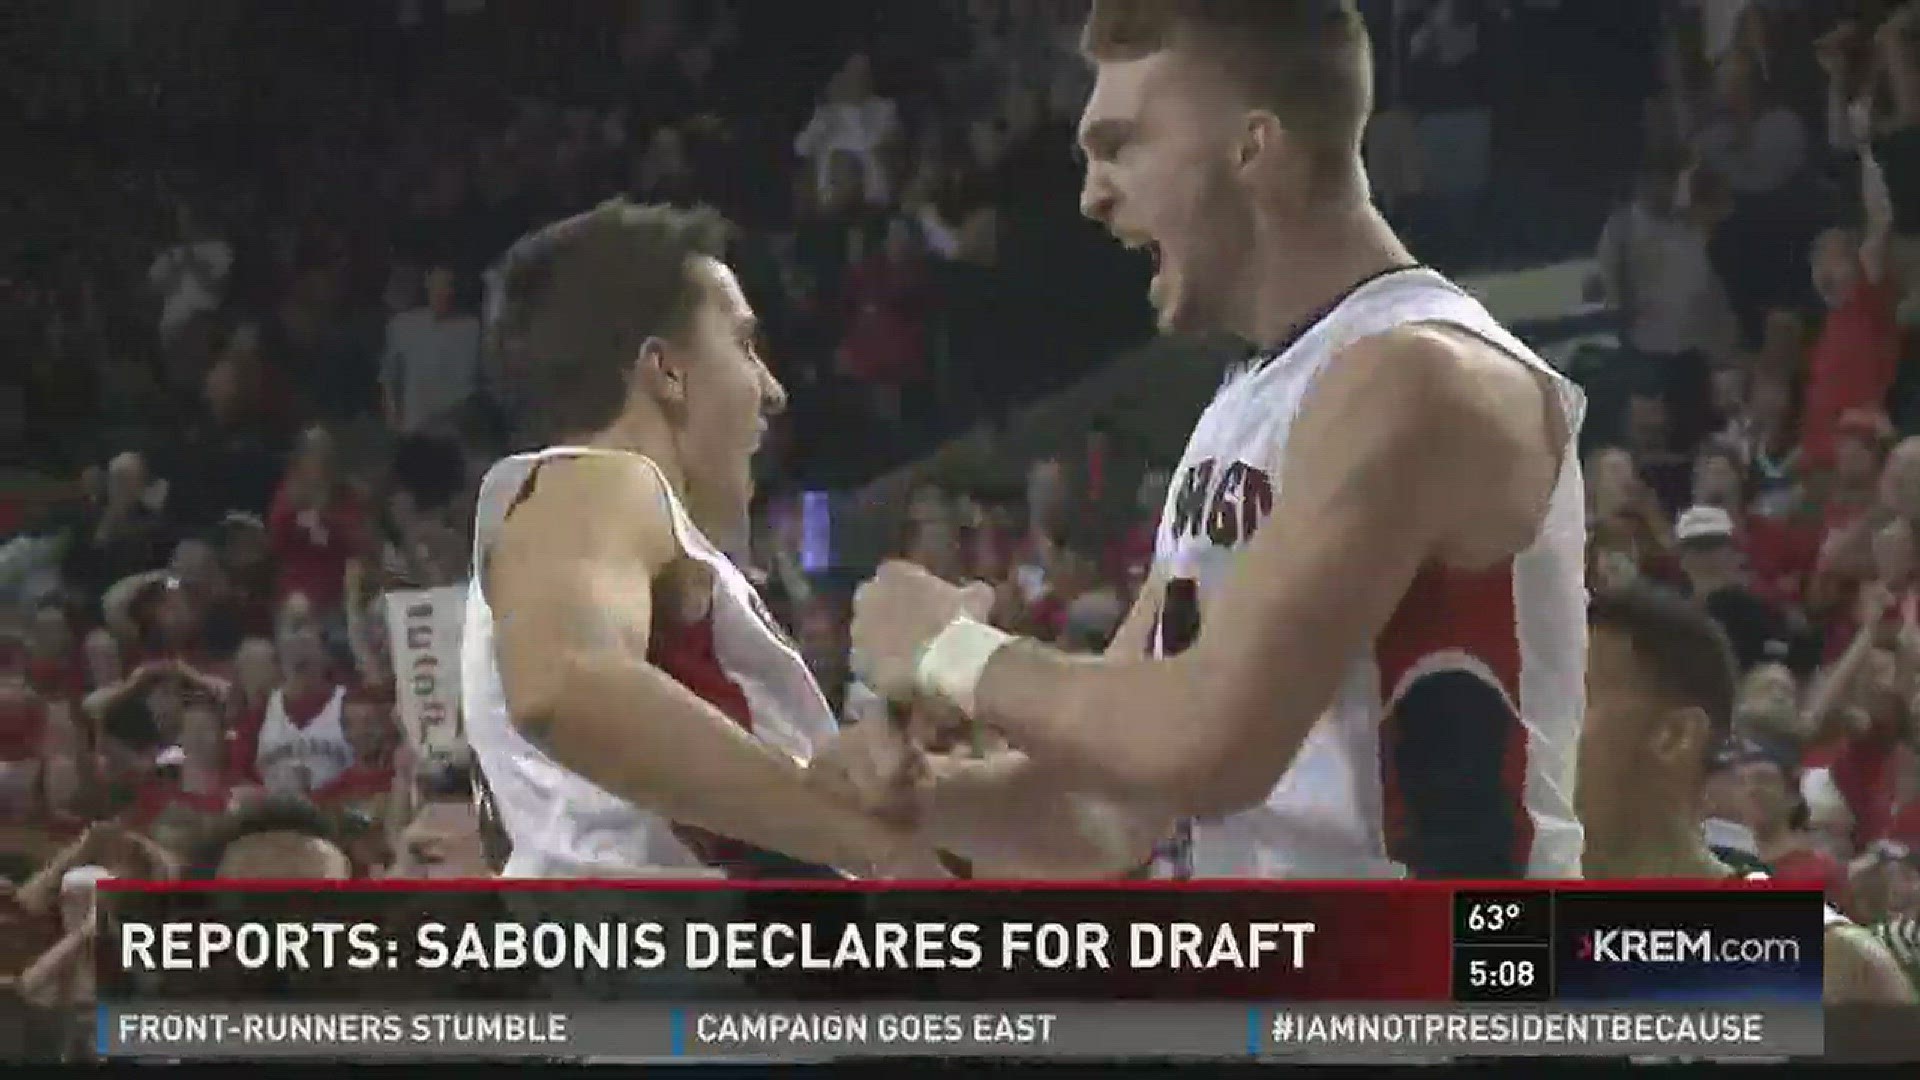 After two stellar seasons at Gonzaga, Domas Sabonis will enter the NBA draft.